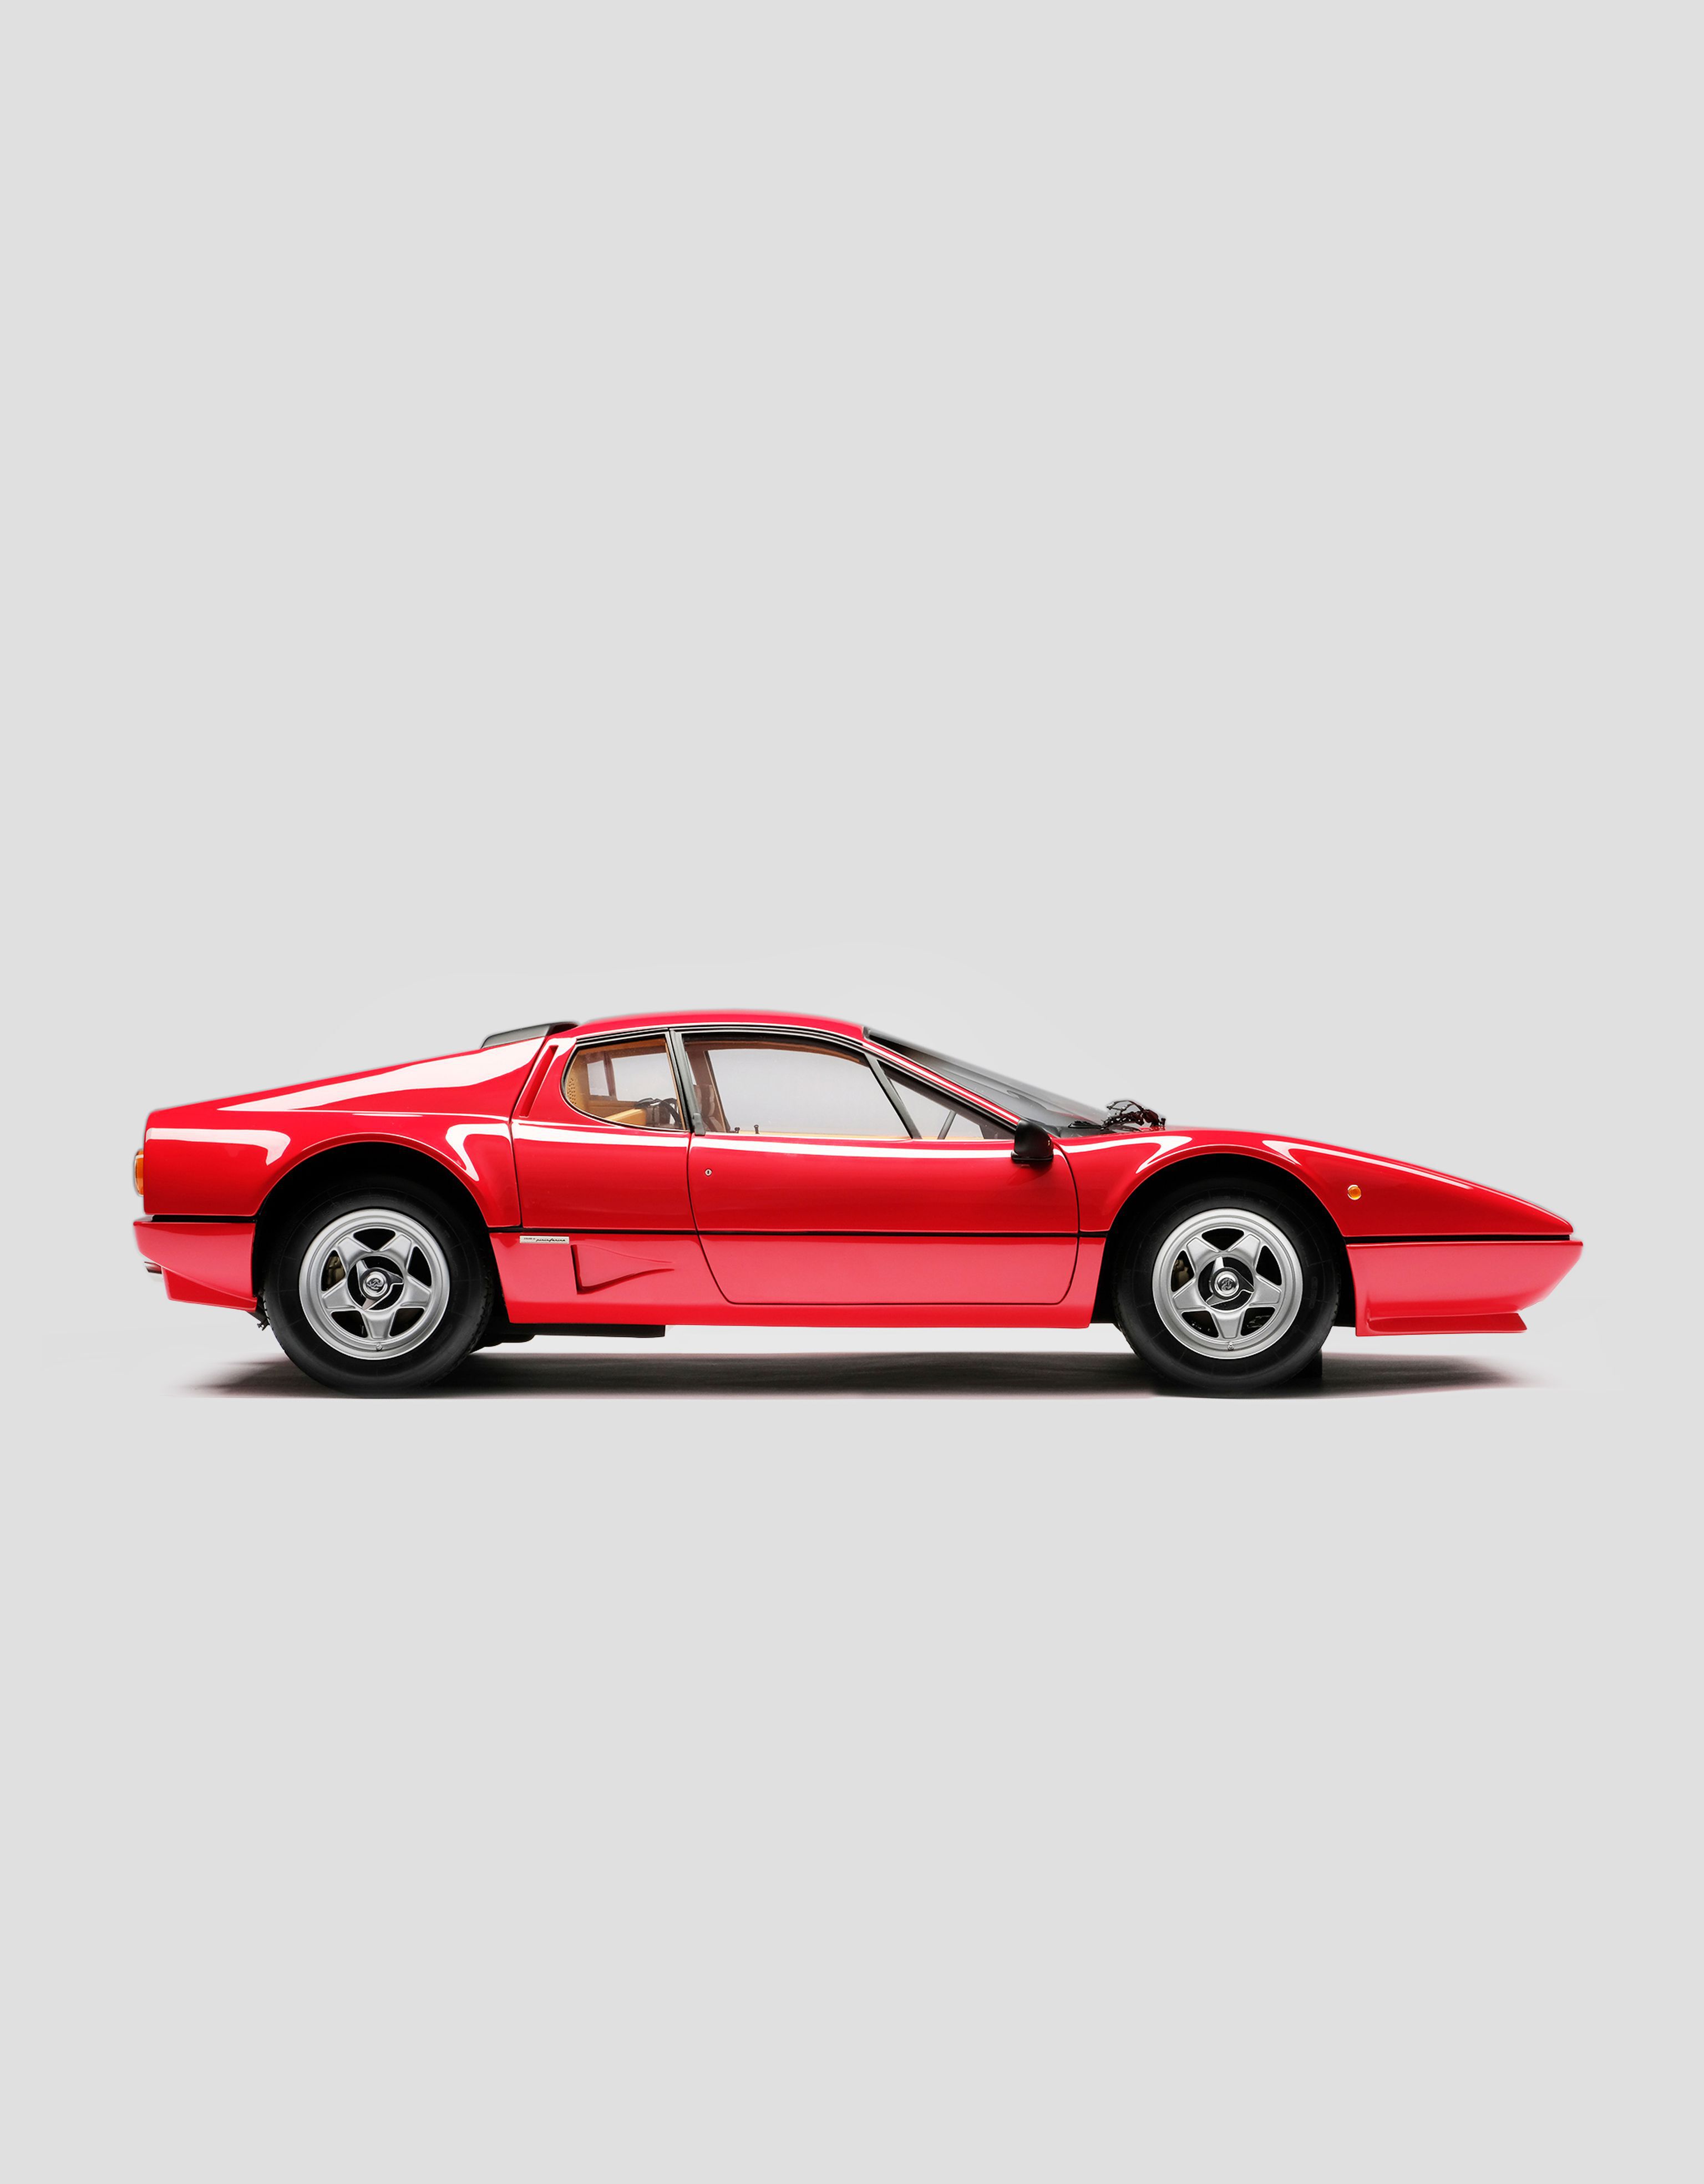 Ferrari Ferrari BB 512i モデルカー 1:8スケール レッド L7585f